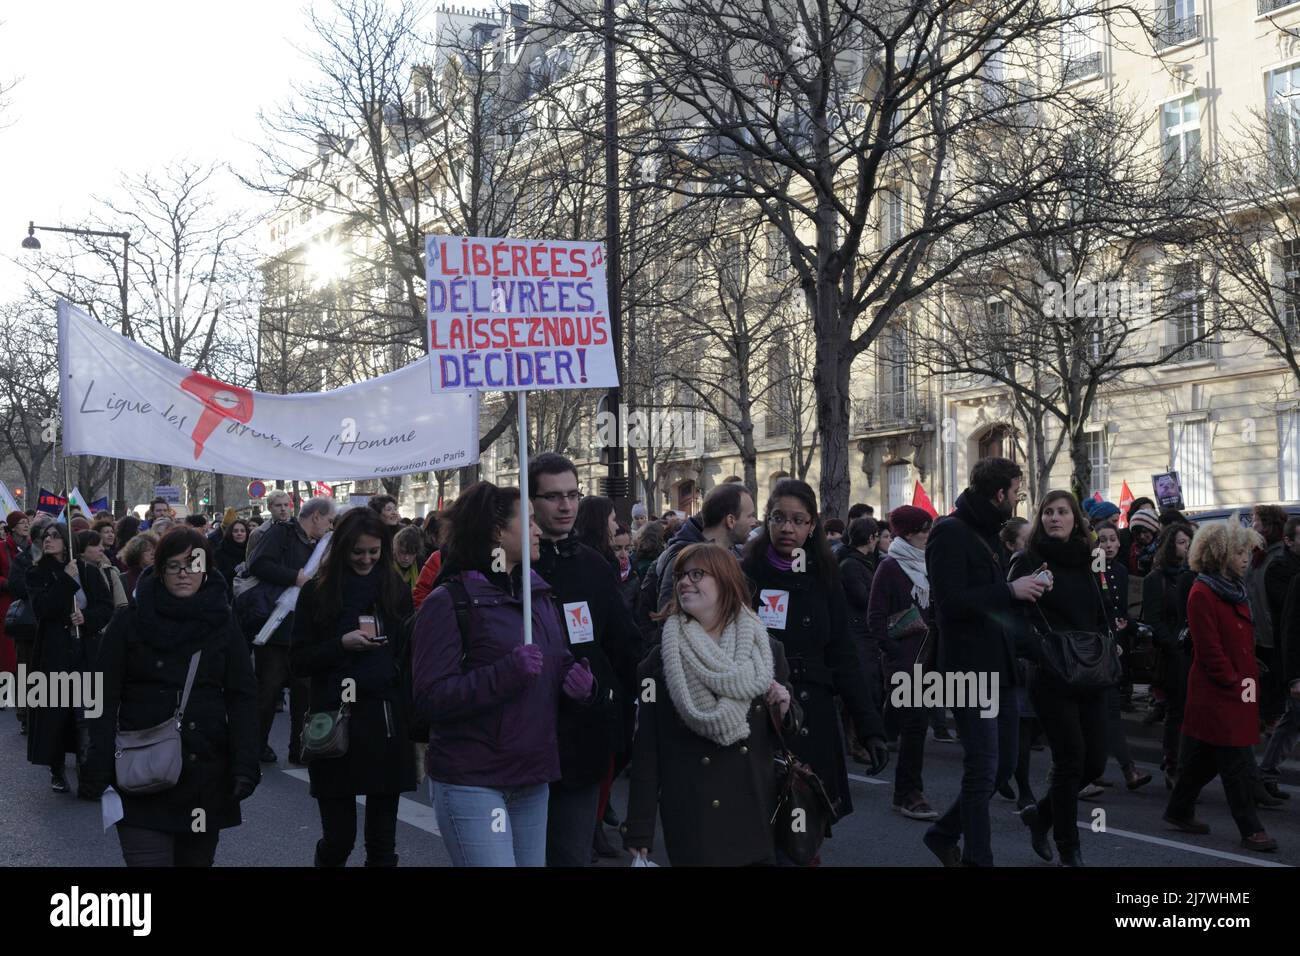 Paris : Manifestation contre le projet de loi anti-avortement en Espagne 01er février 2014. 'Libérées, délivrées, laissez-nous décider' Stock Photo